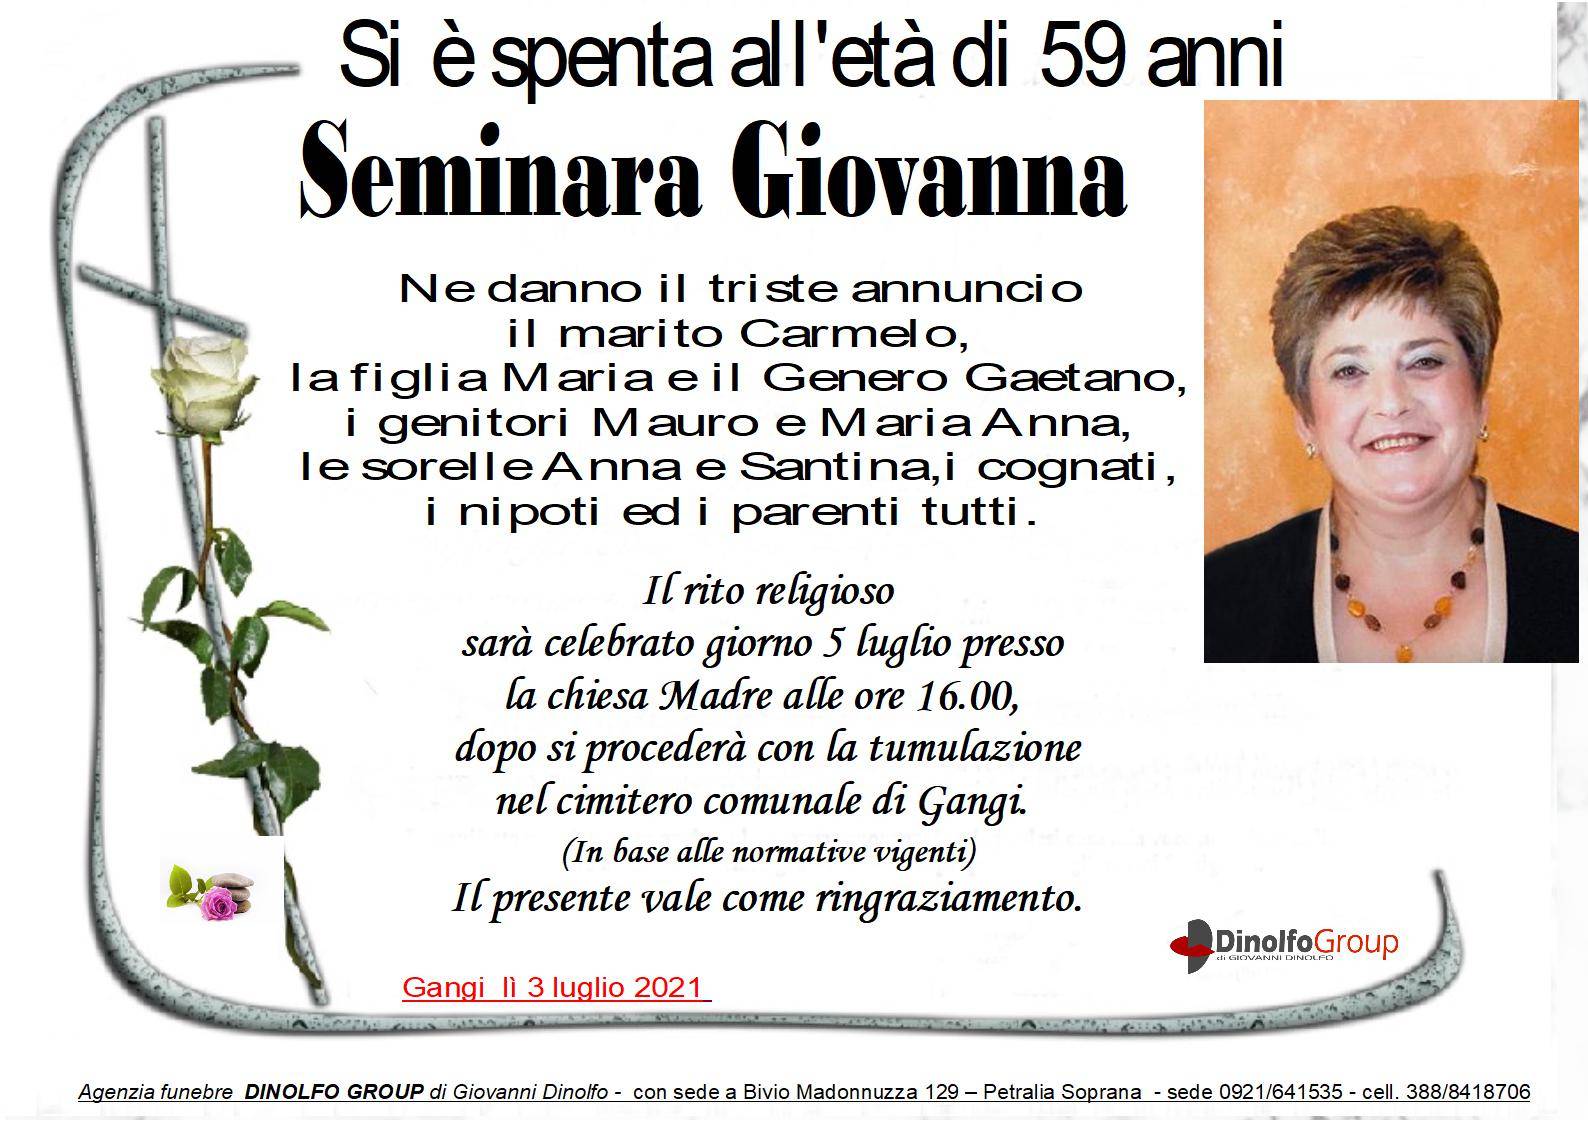 Giovanna Seminara